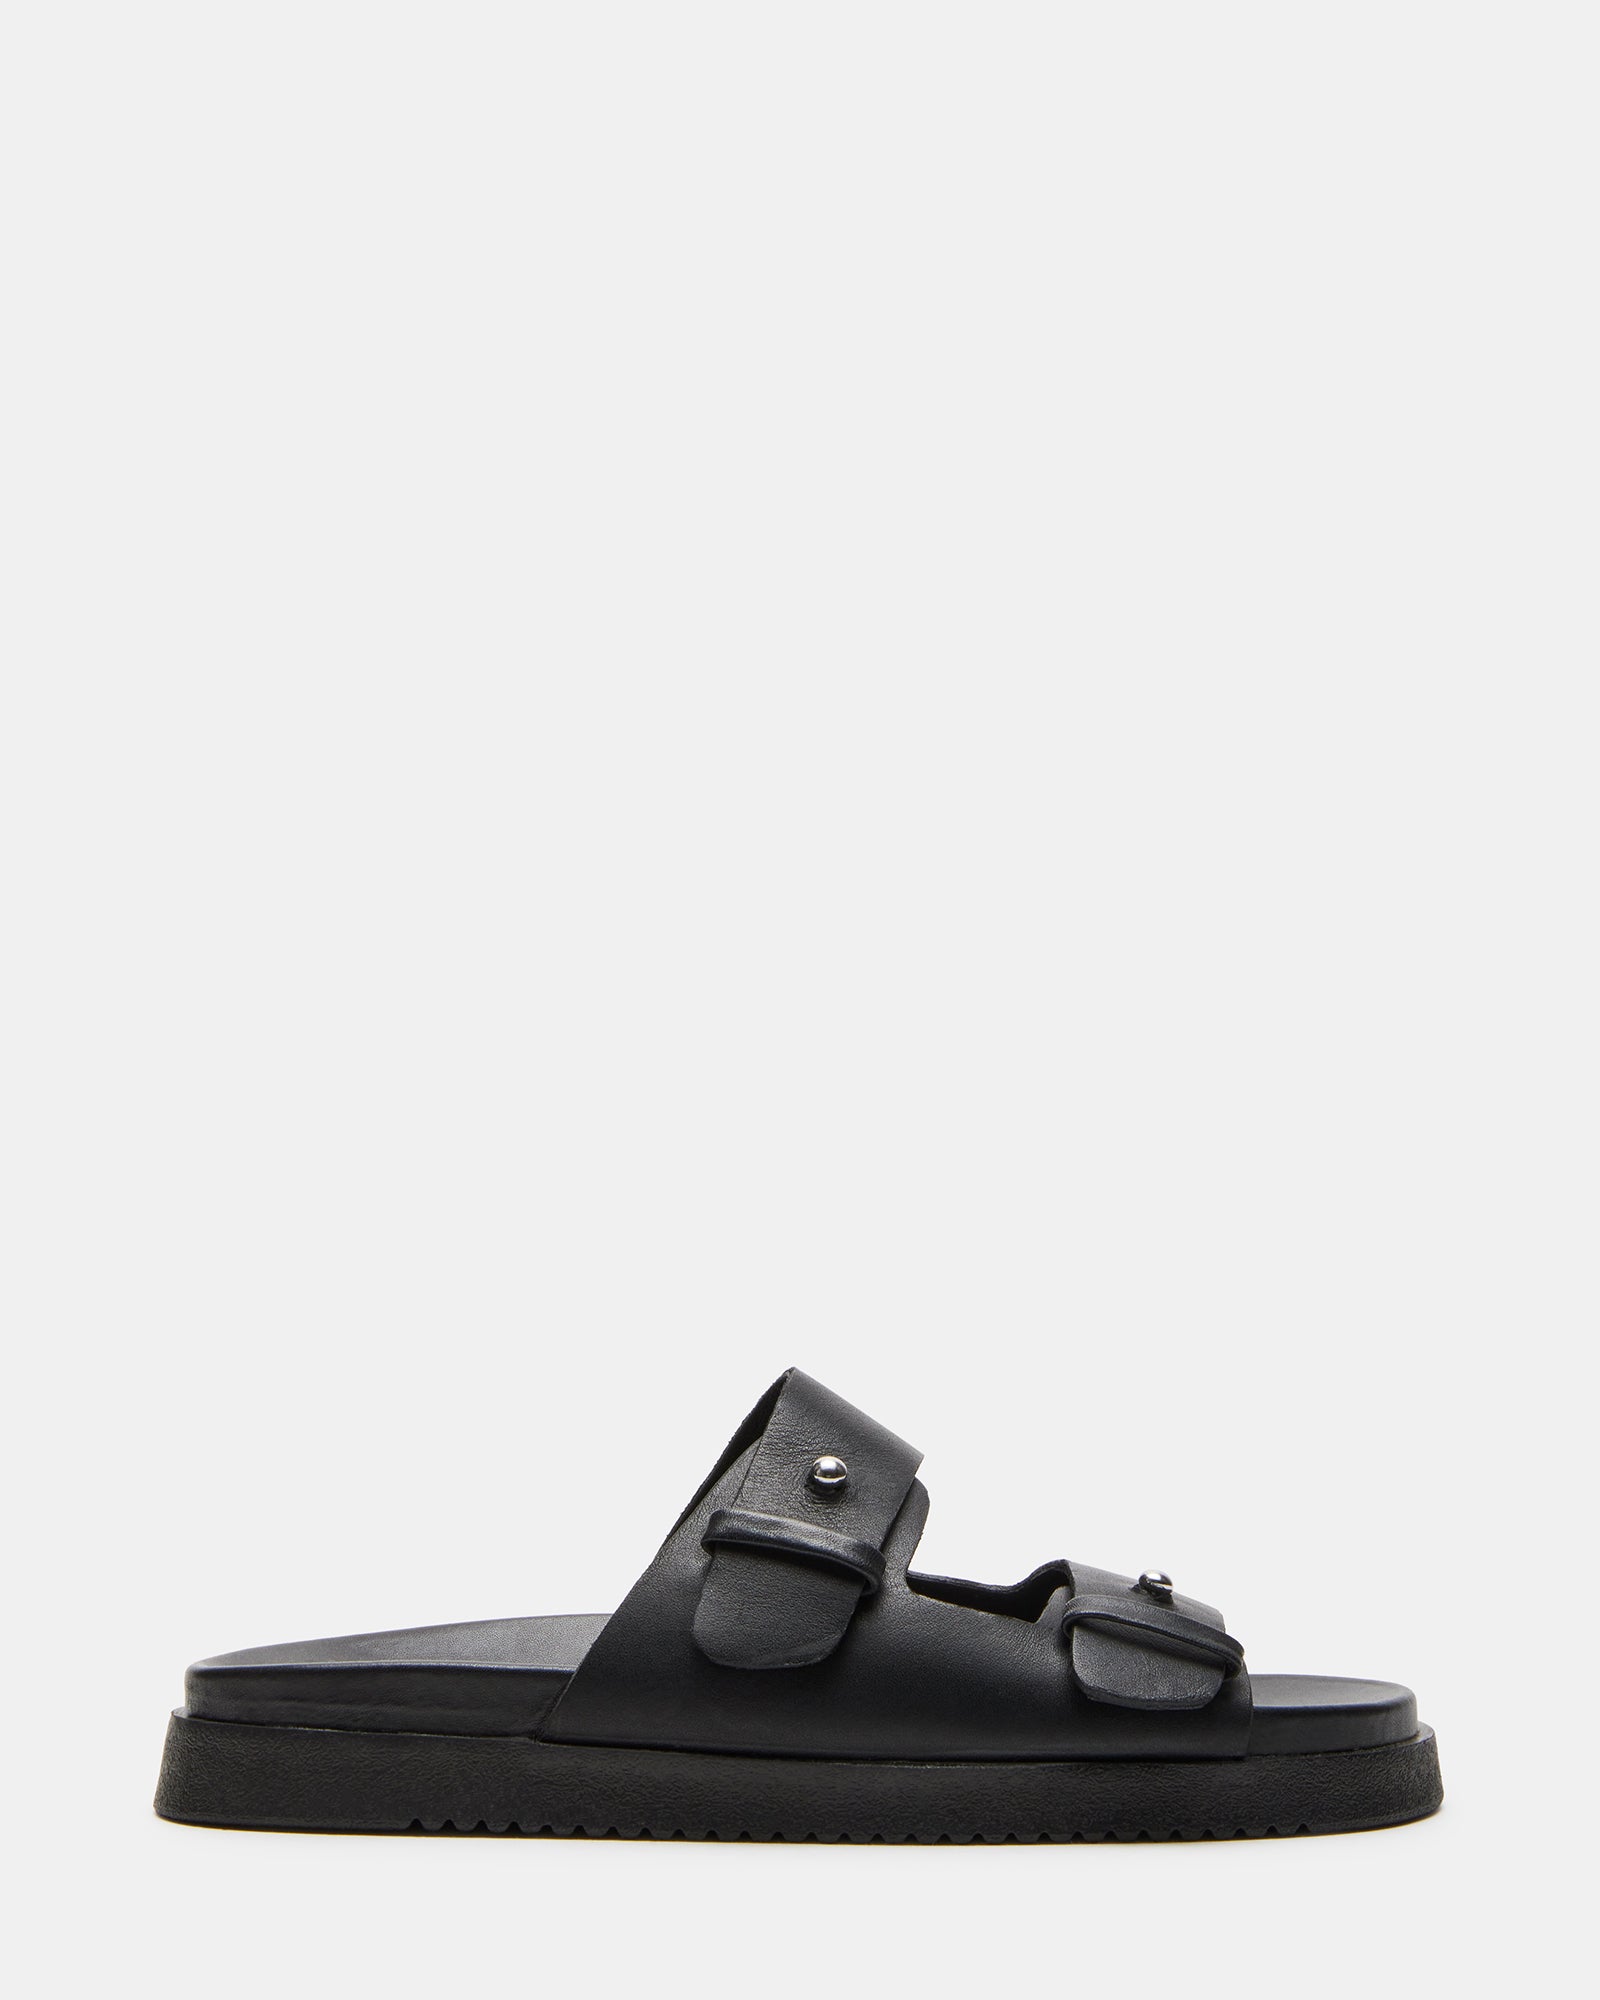 MARIEL Black Leather Flatform Slide Sandal | Women's Sandals – Steve Madden